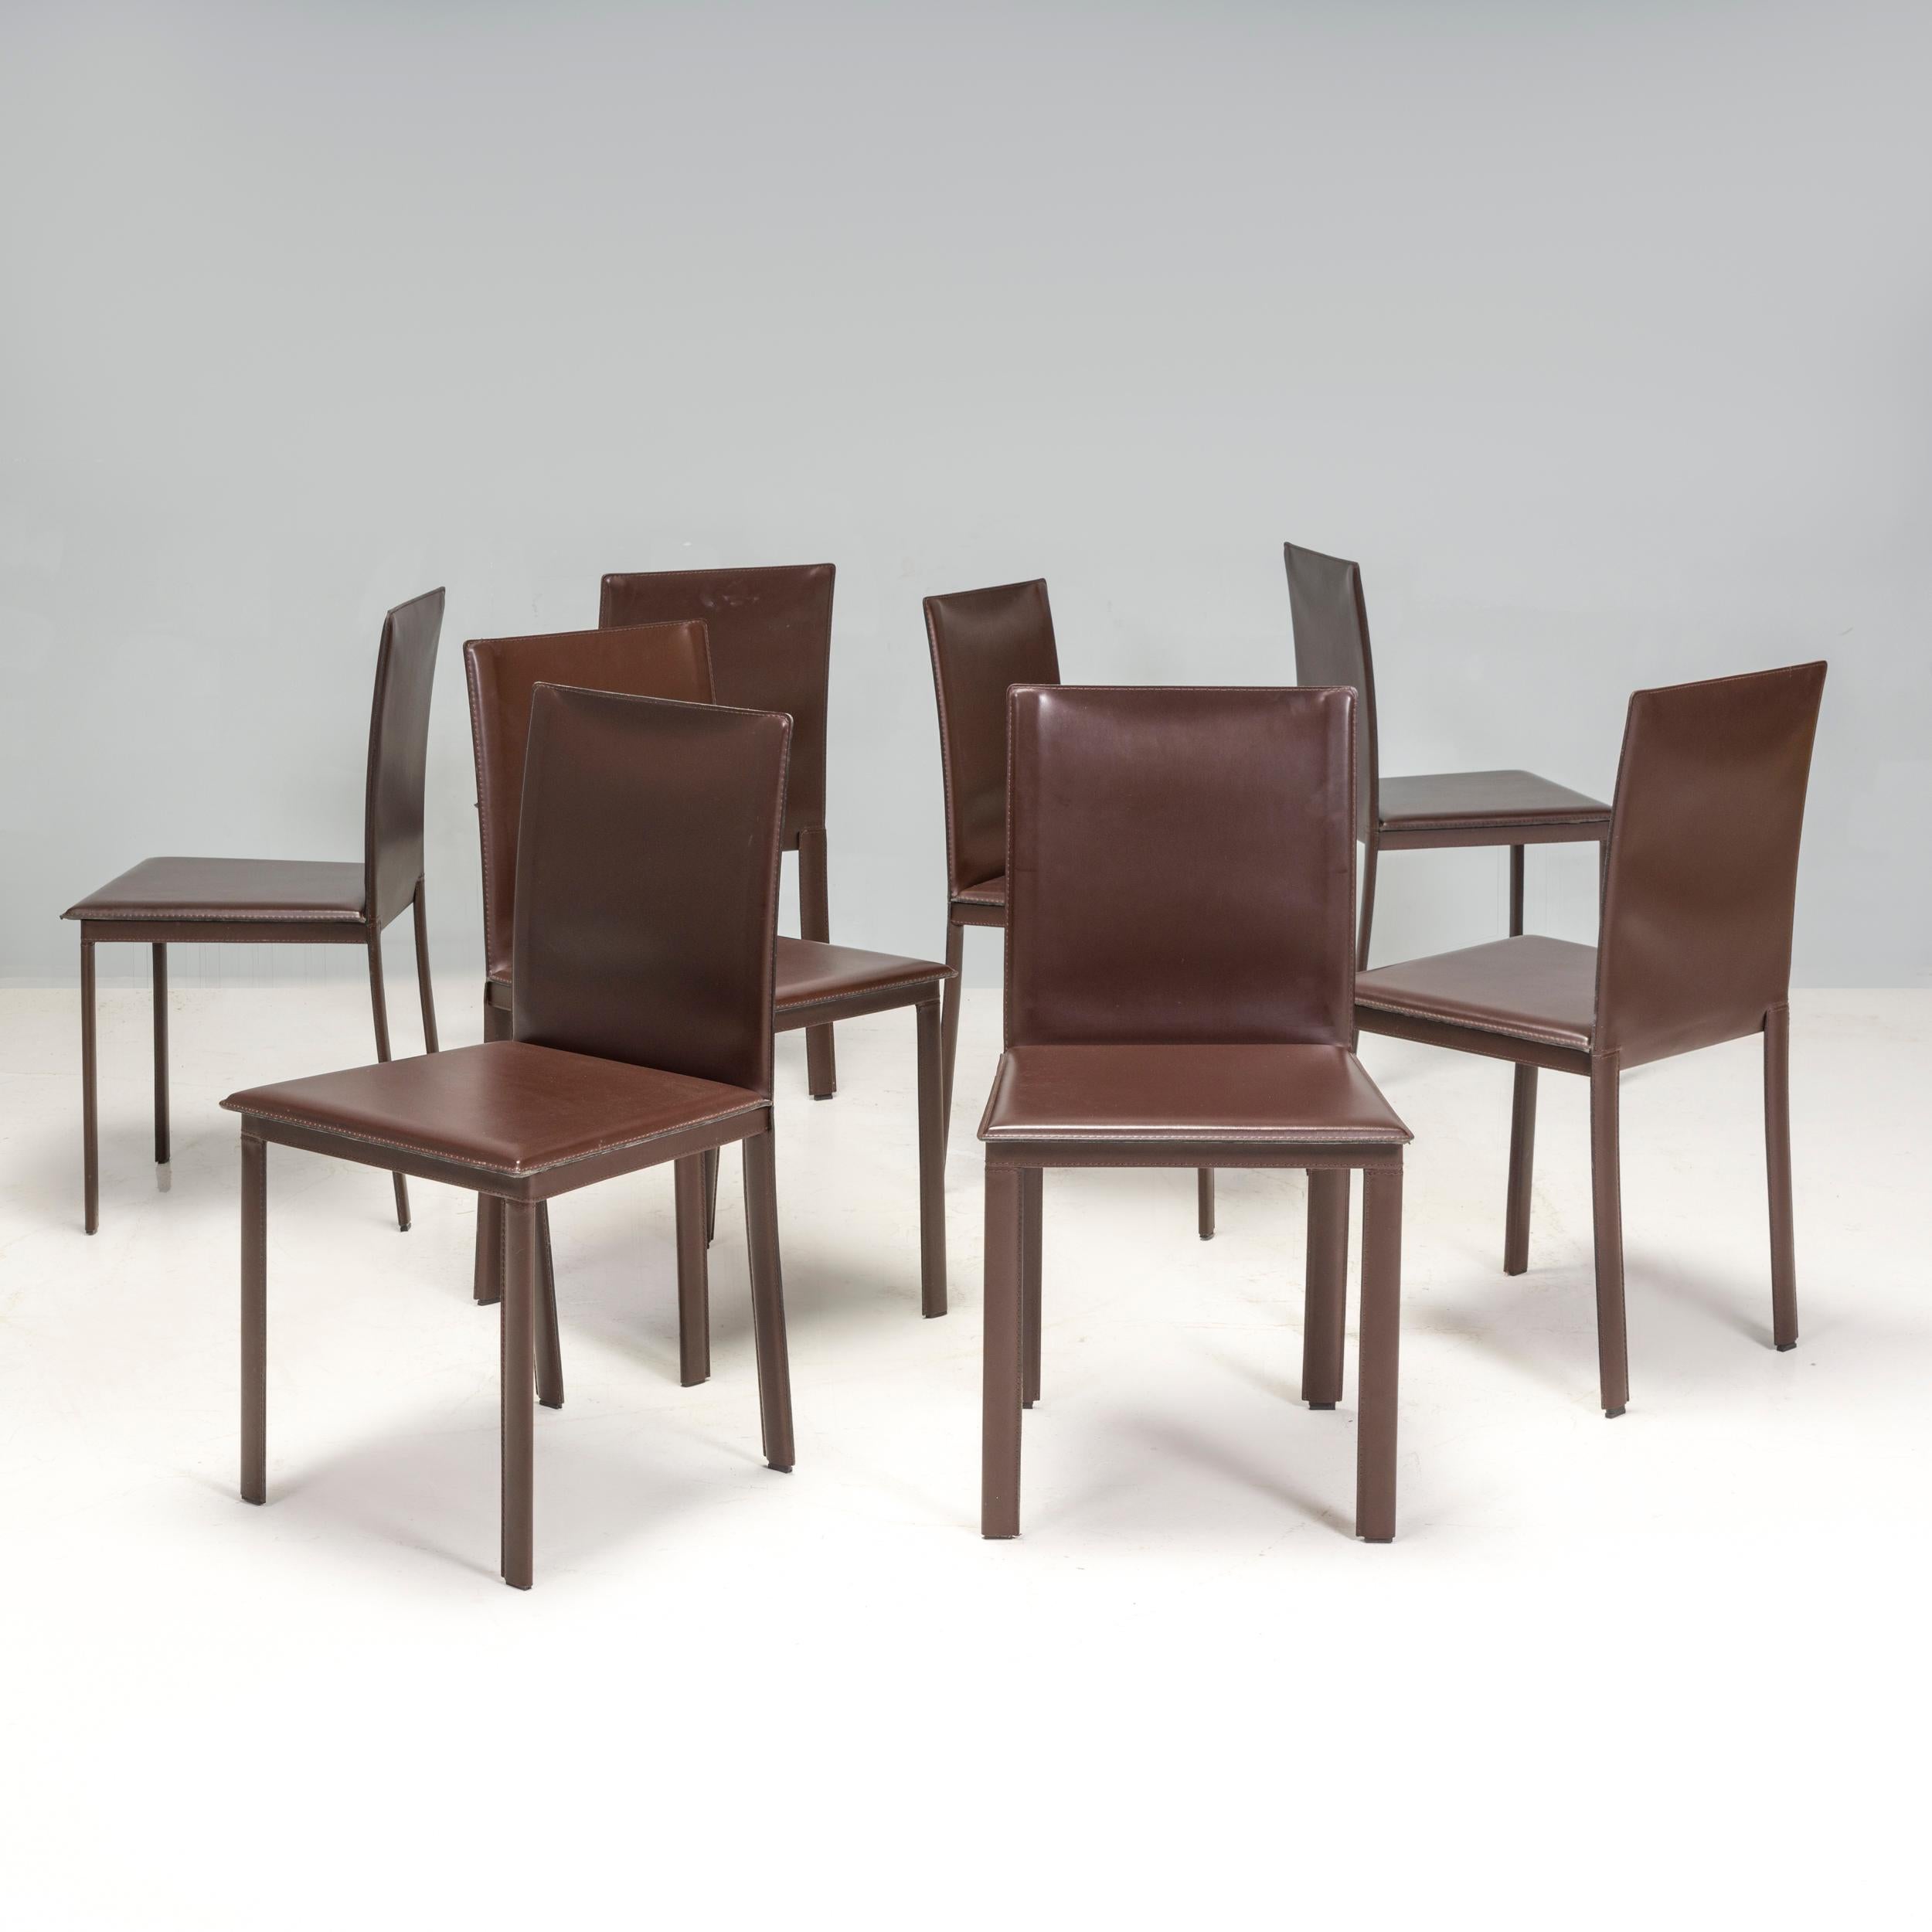 Les chaises de salle à manger Riva 1920 présentent une silhouette élégante et contemporaine. Leurs coussins d'assise sont paddés et rembourrés en cuir marron foncé pour un confort supplémentaire, et présentent une finition brillante qui ajoute à